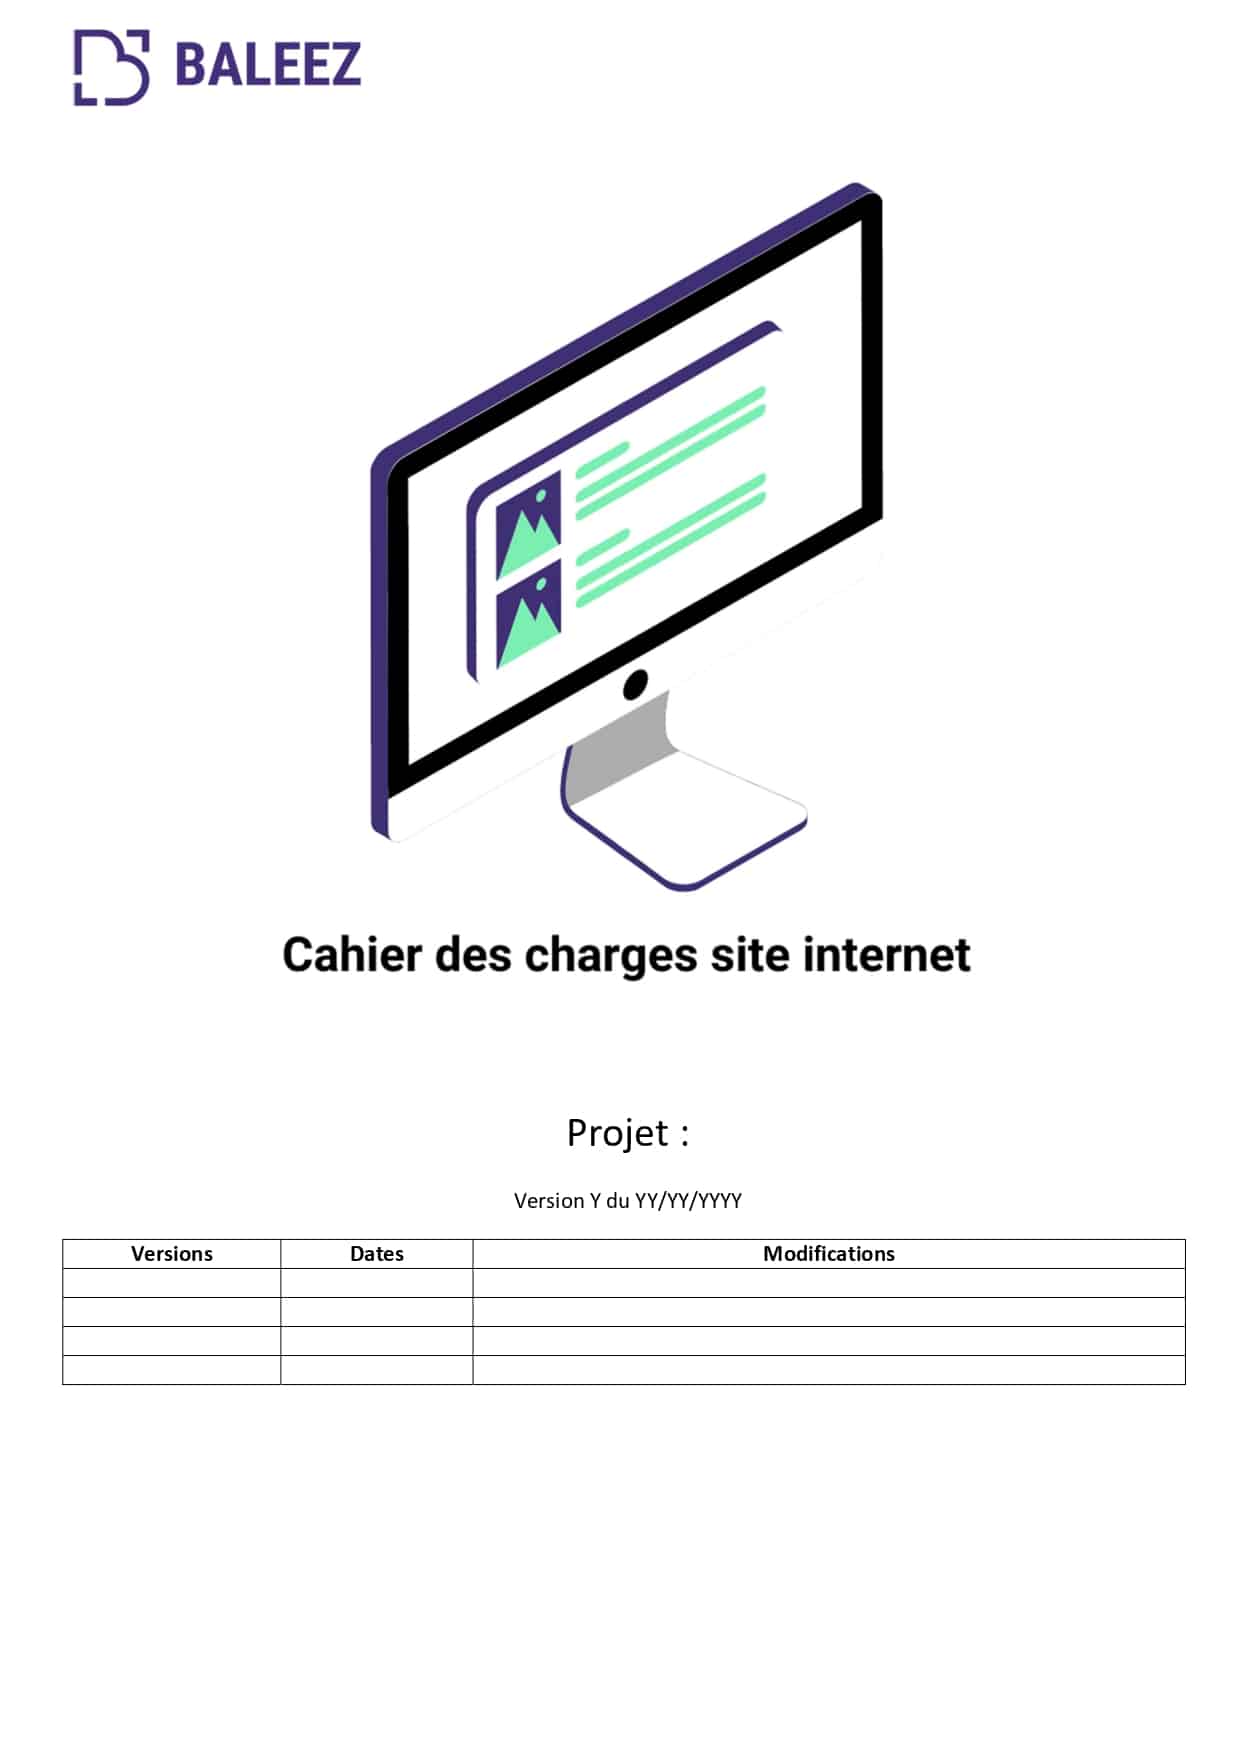 Le cahier des charges qui est réalisé chez Baleez pour préparer la conception d'un site internet.